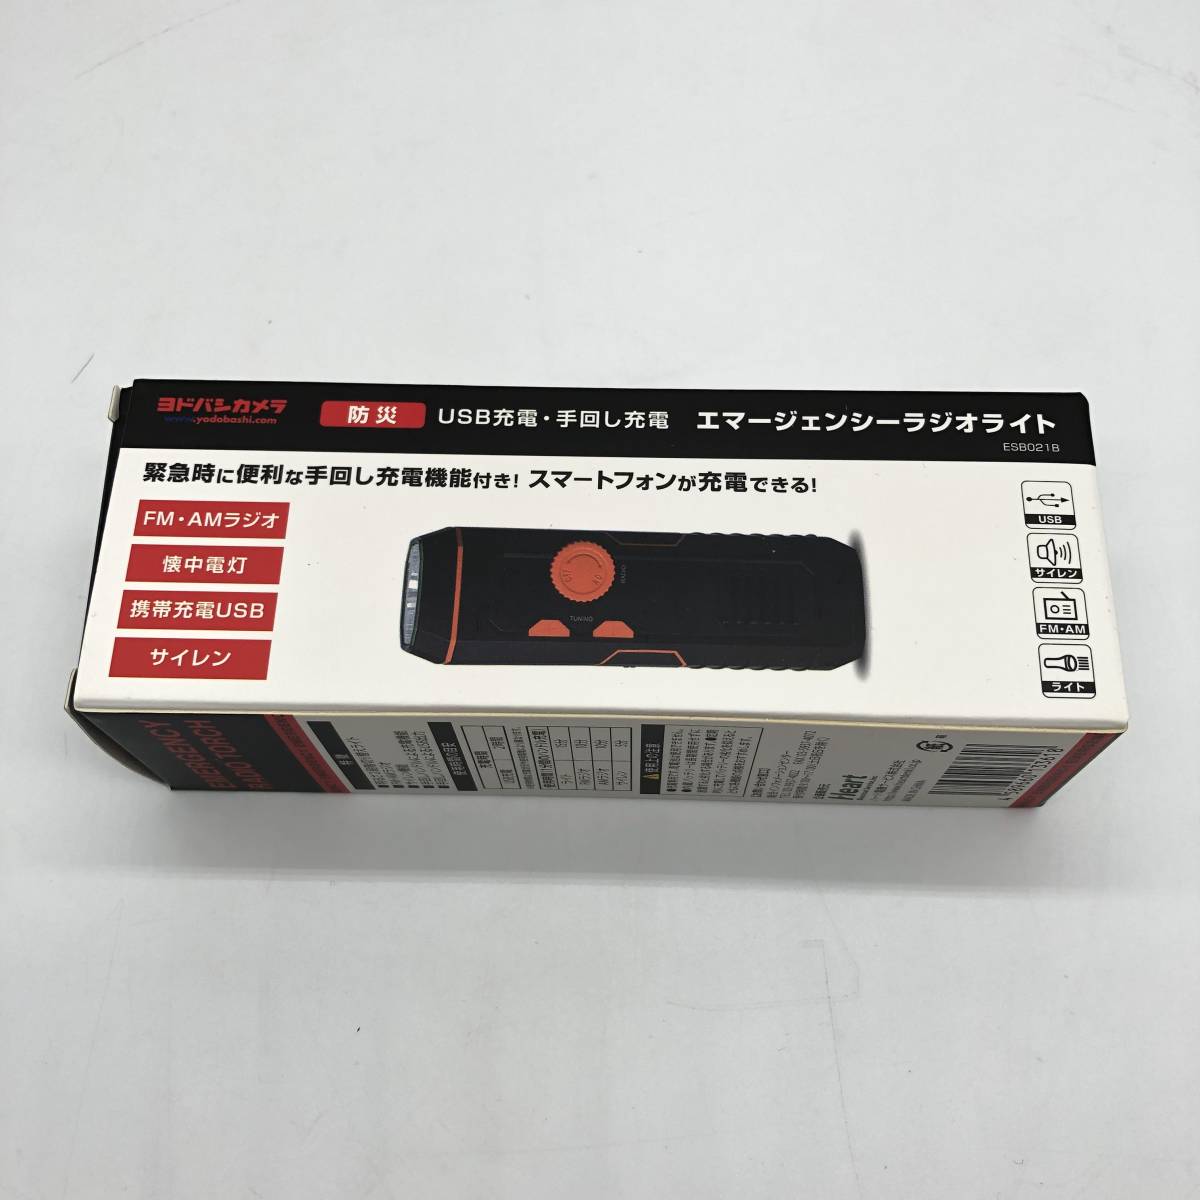 【新品未開封】ヨドバシカメラ エマージェンシーラジオライト ESB021B USB 手回し充電_画像3